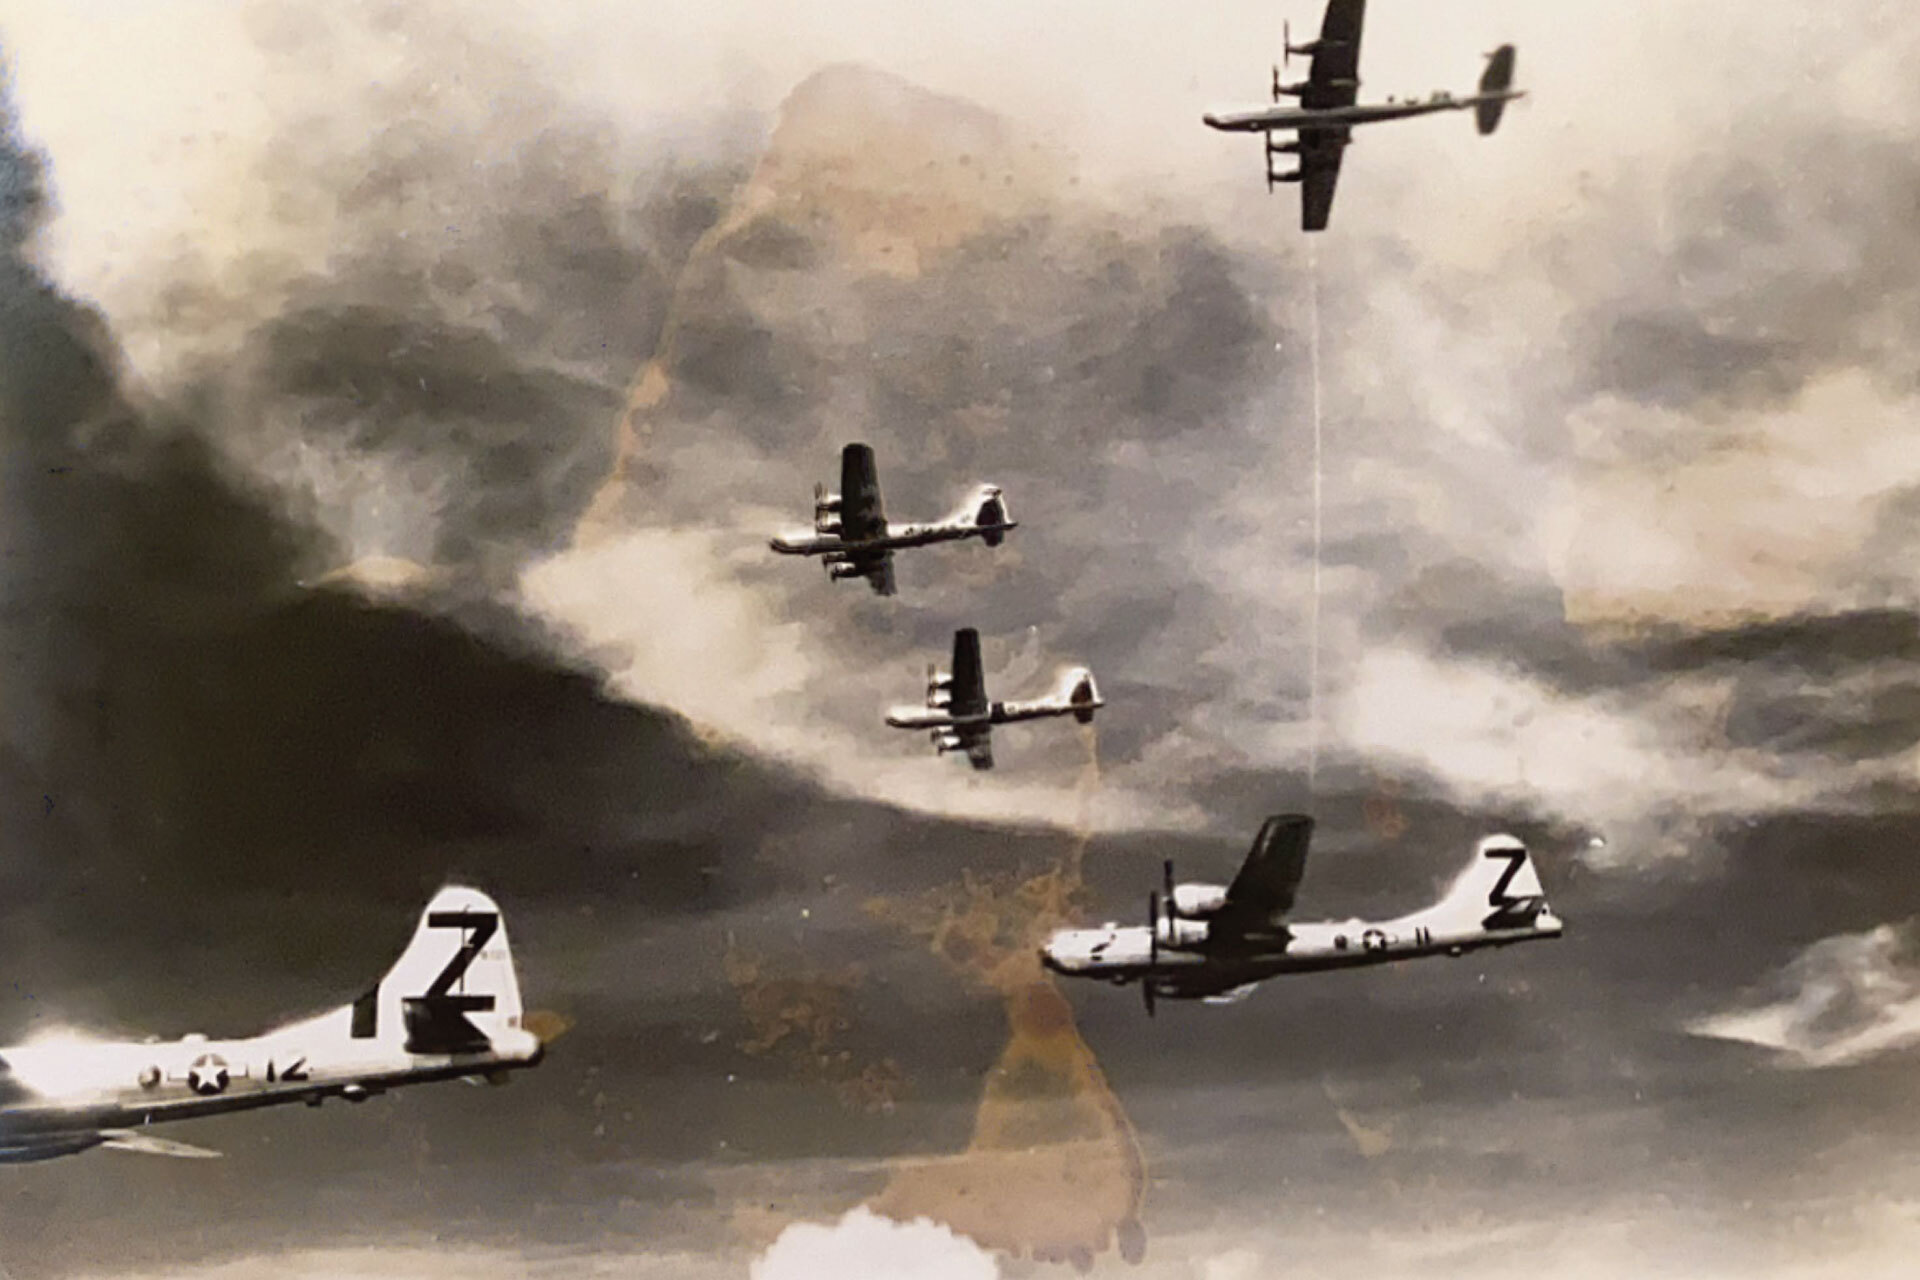 Выцветшая отсканированная фотография, на которой изображены летящие самолеты времен Второй мировой войны